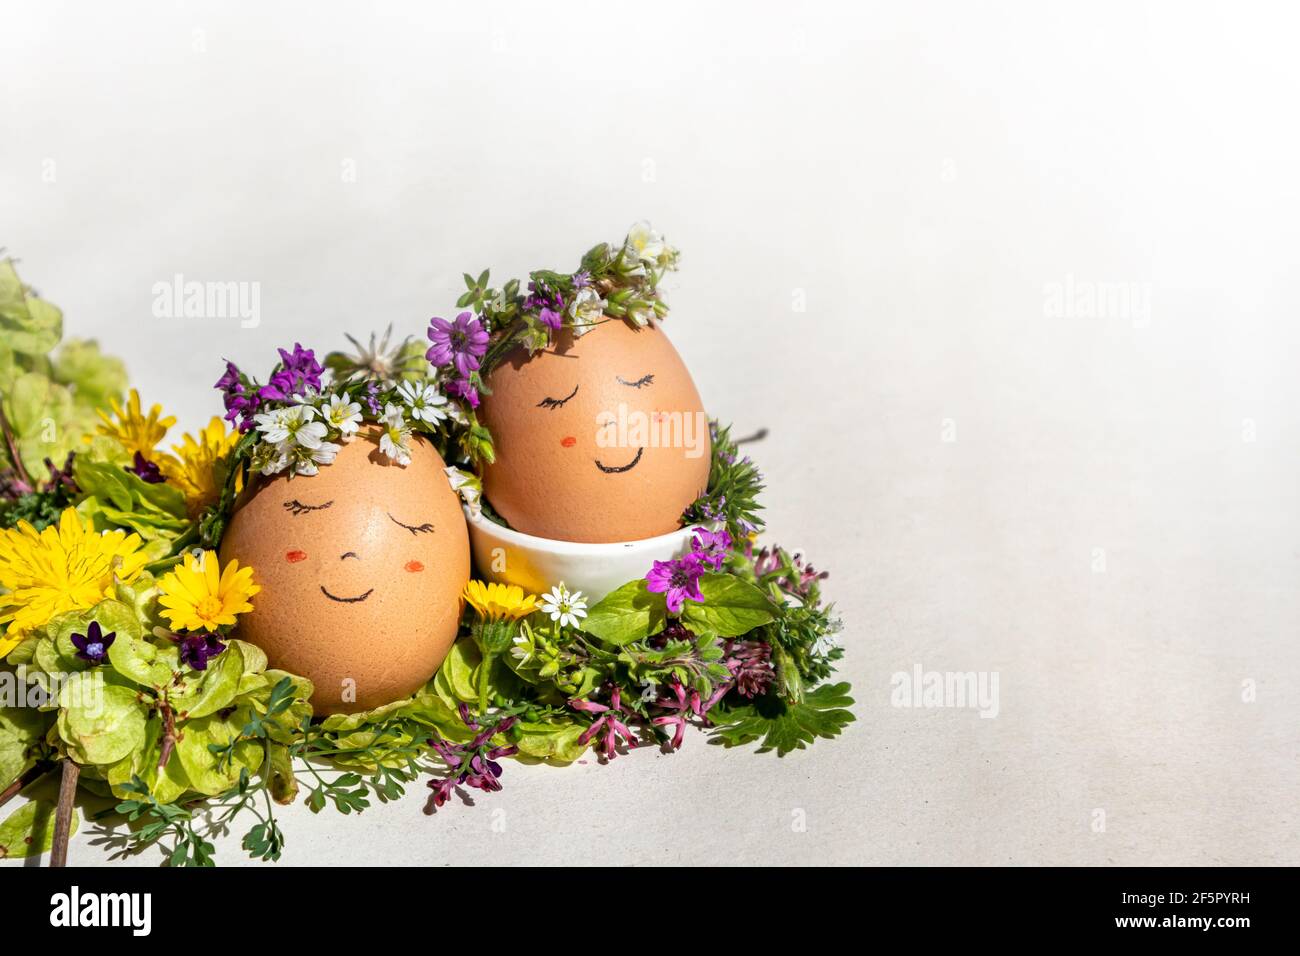 Ostern und Frühling Konzept. Zwei Eier mit einem lächelnden Gesicht und einer Blumengirlande, die die Frühlingssonne auf einem Bett aus Ulmenkernen und Wildblumen genießen Stockfoto